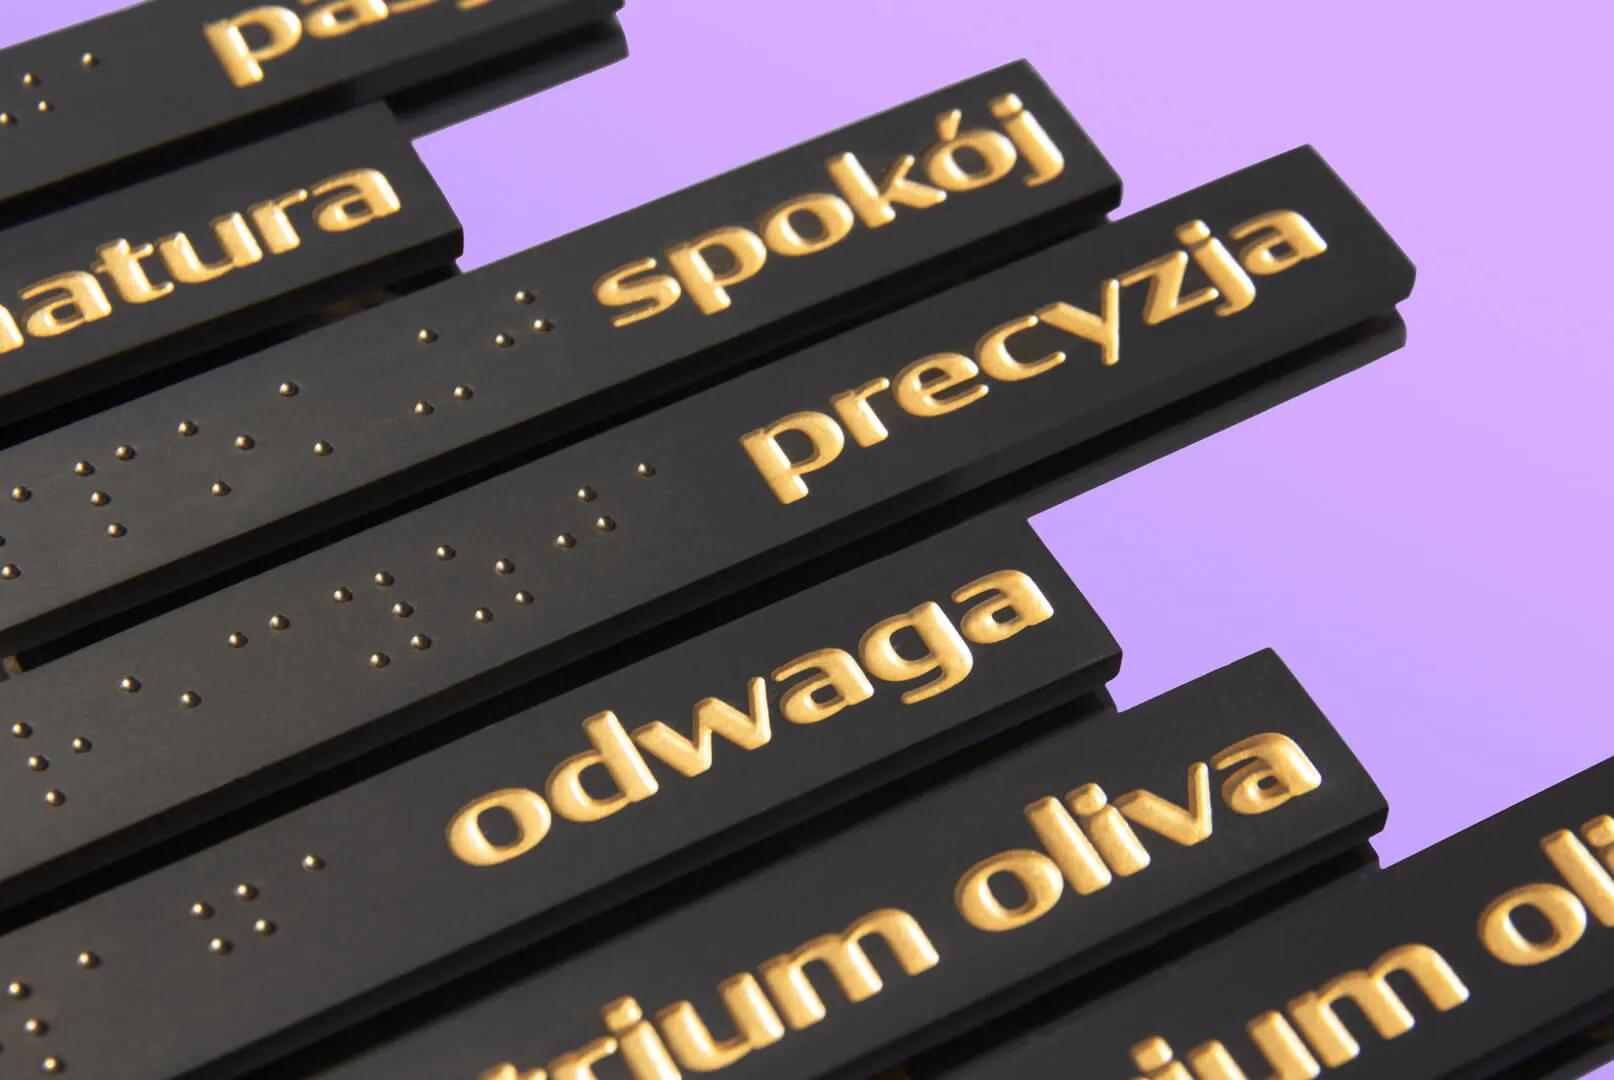 Projektowanie w pełni zgodnych, świetnie wyglądających znaków, tabliczek z alfabetem Braille'a